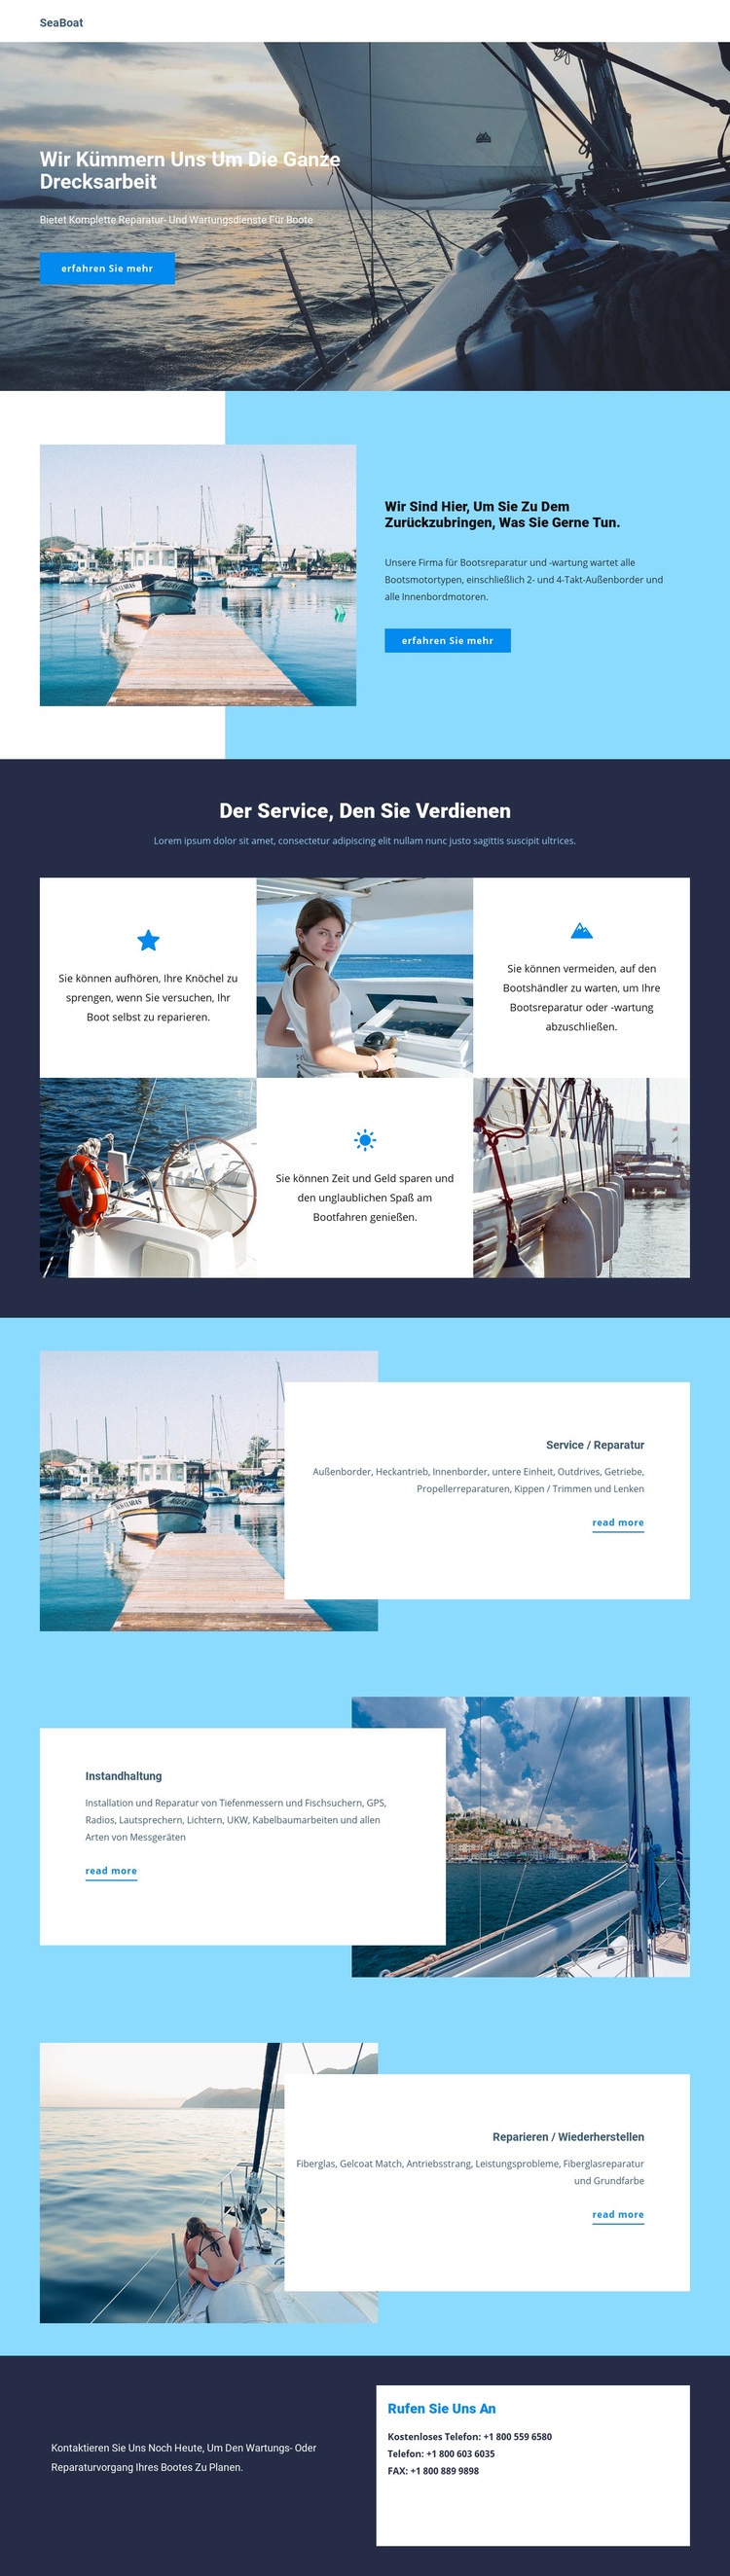 Reisen Sie mit dem Seeboot Website Builder-Vorlagen